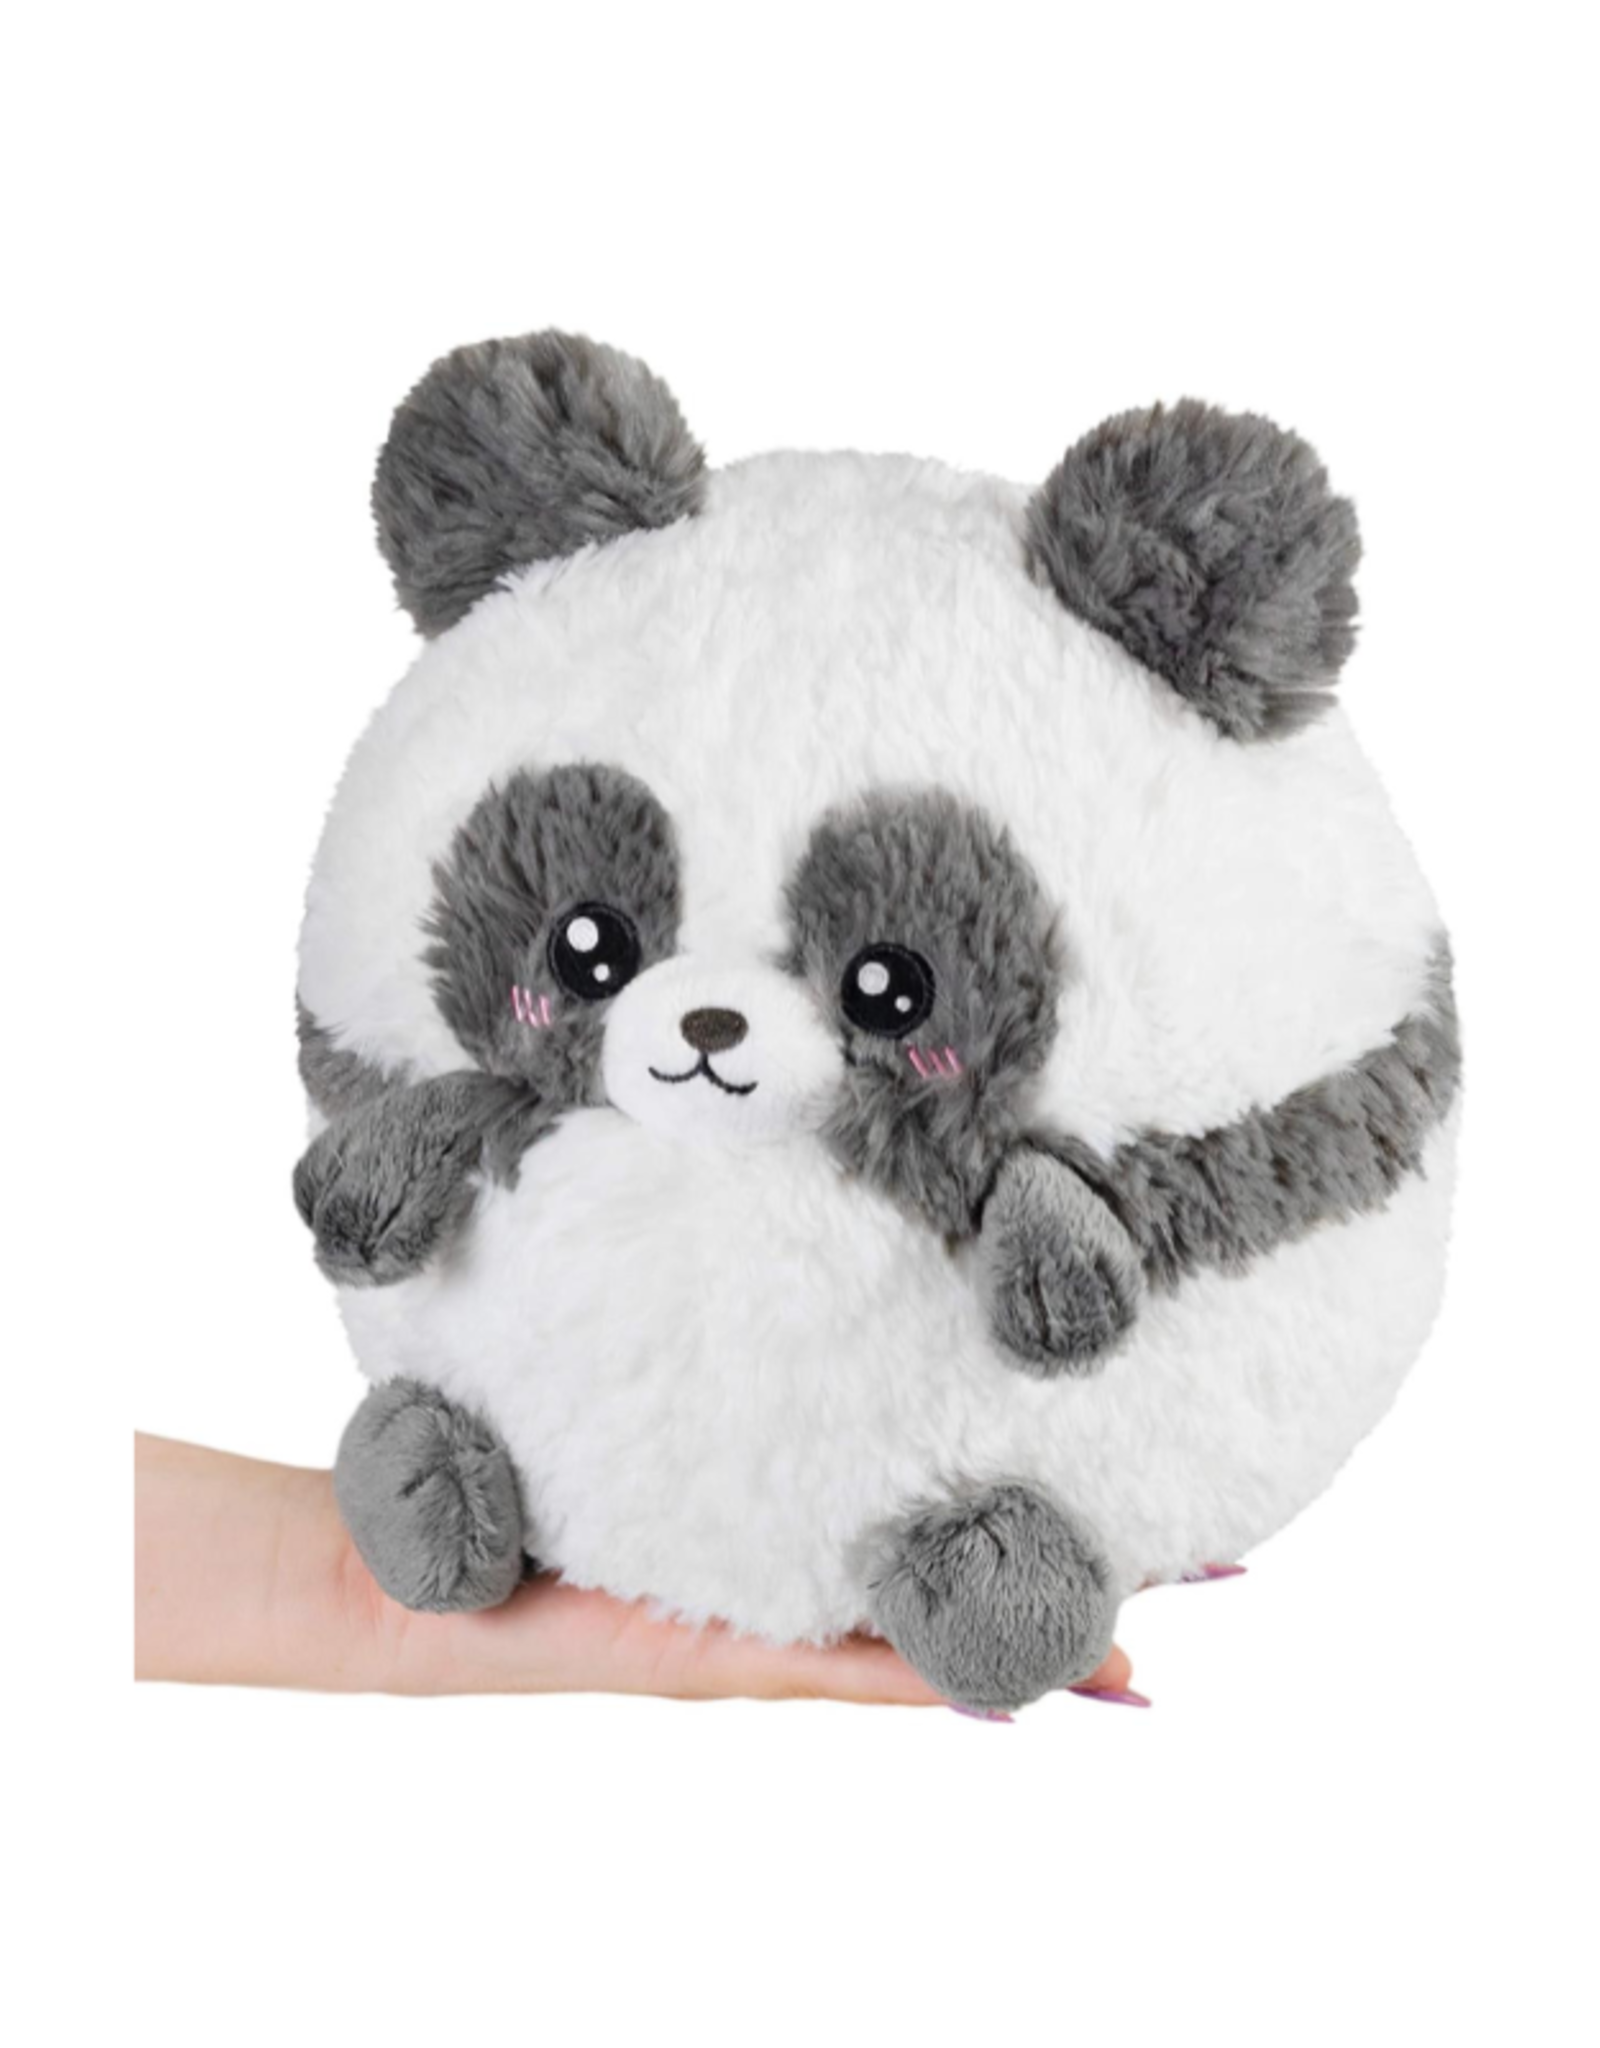 Squishable Mini Squishable: Baby Panda